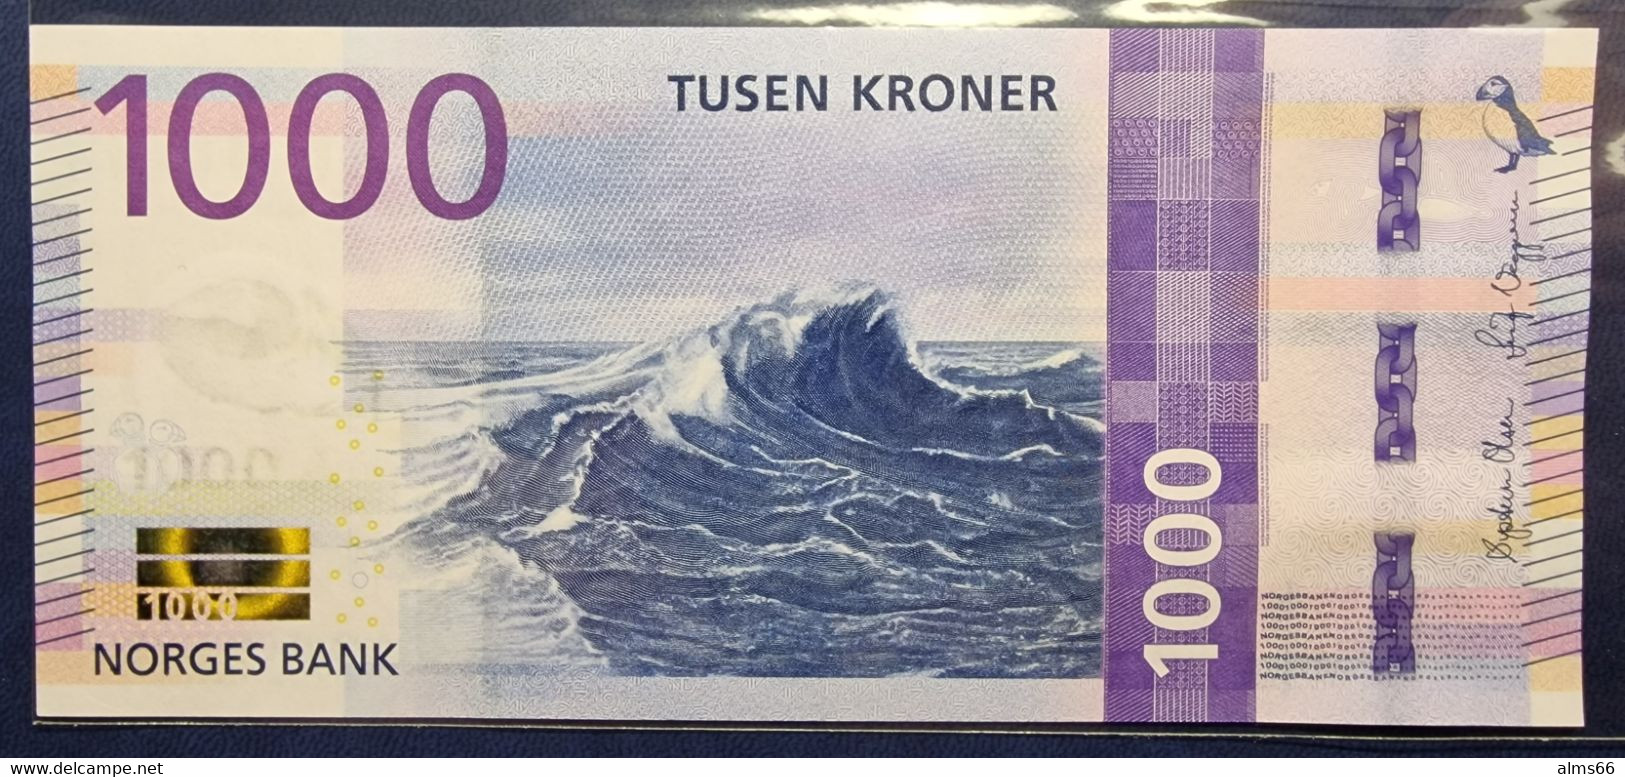 Norway 1000 Kroner 2019 UNC P- 57 - Norway